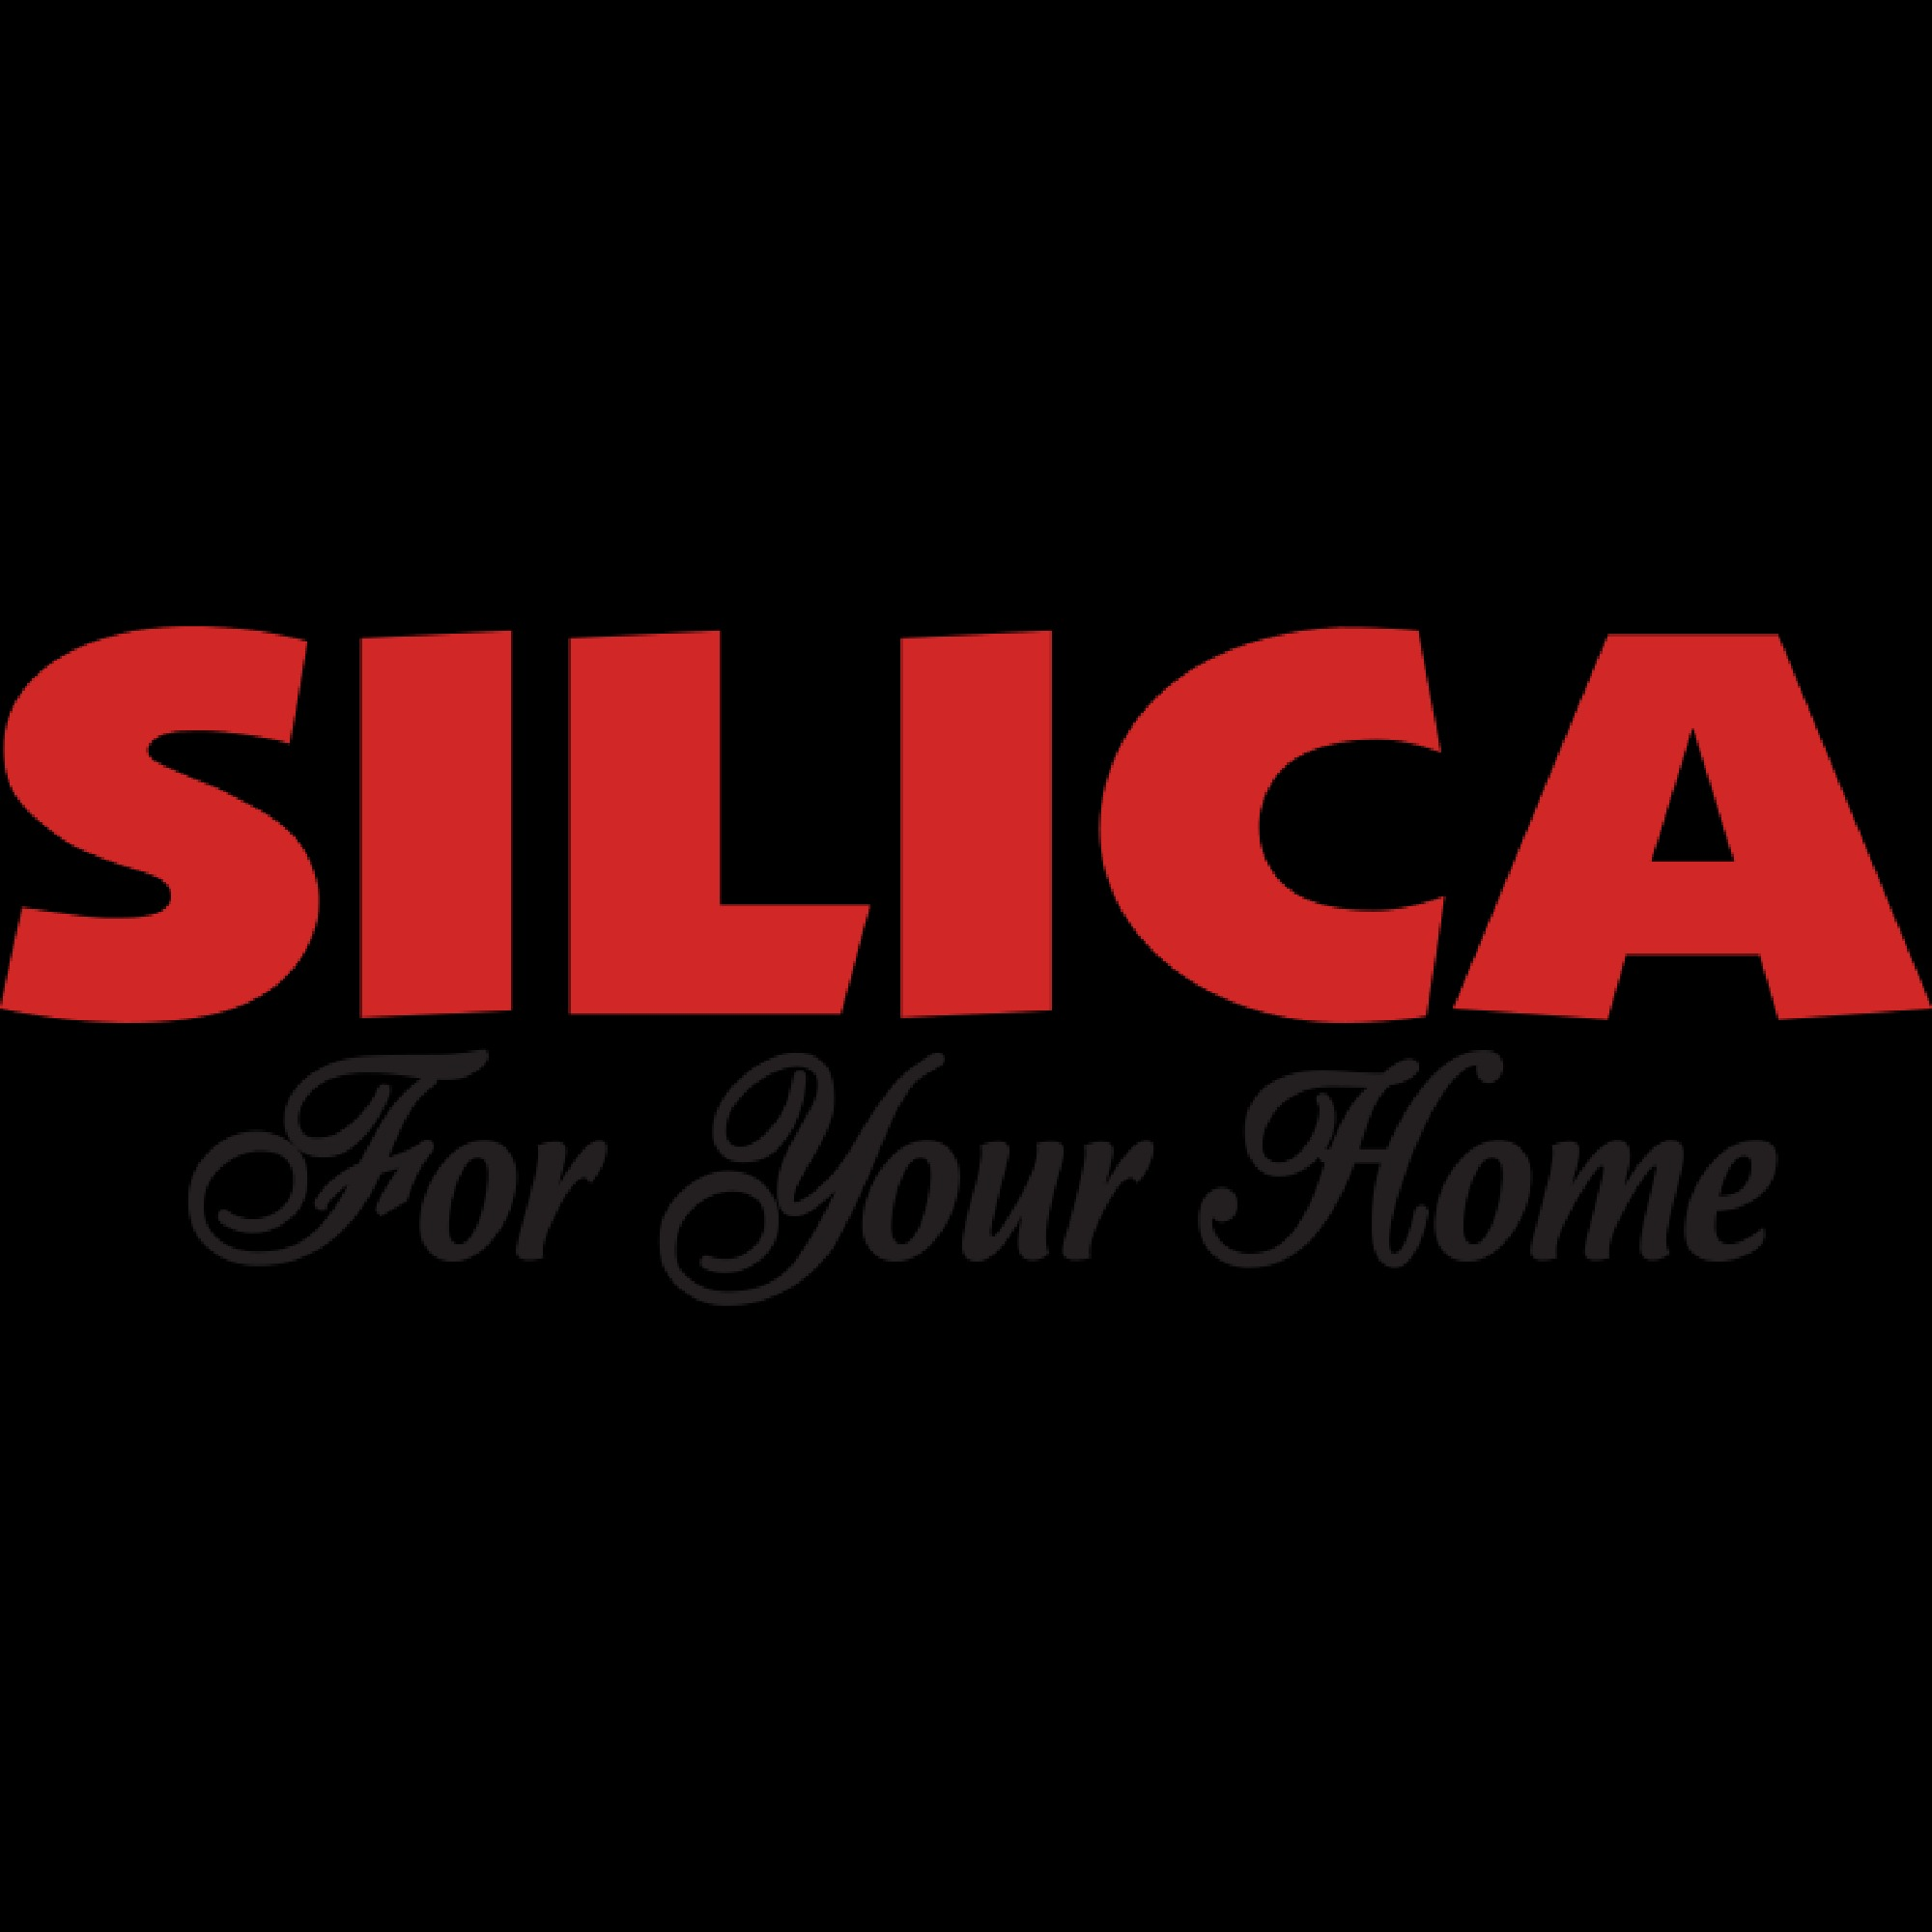 Silica For Your Home - Beaver Dam, WI 53916 - (920)885-2260 | ShowMeLocal.com